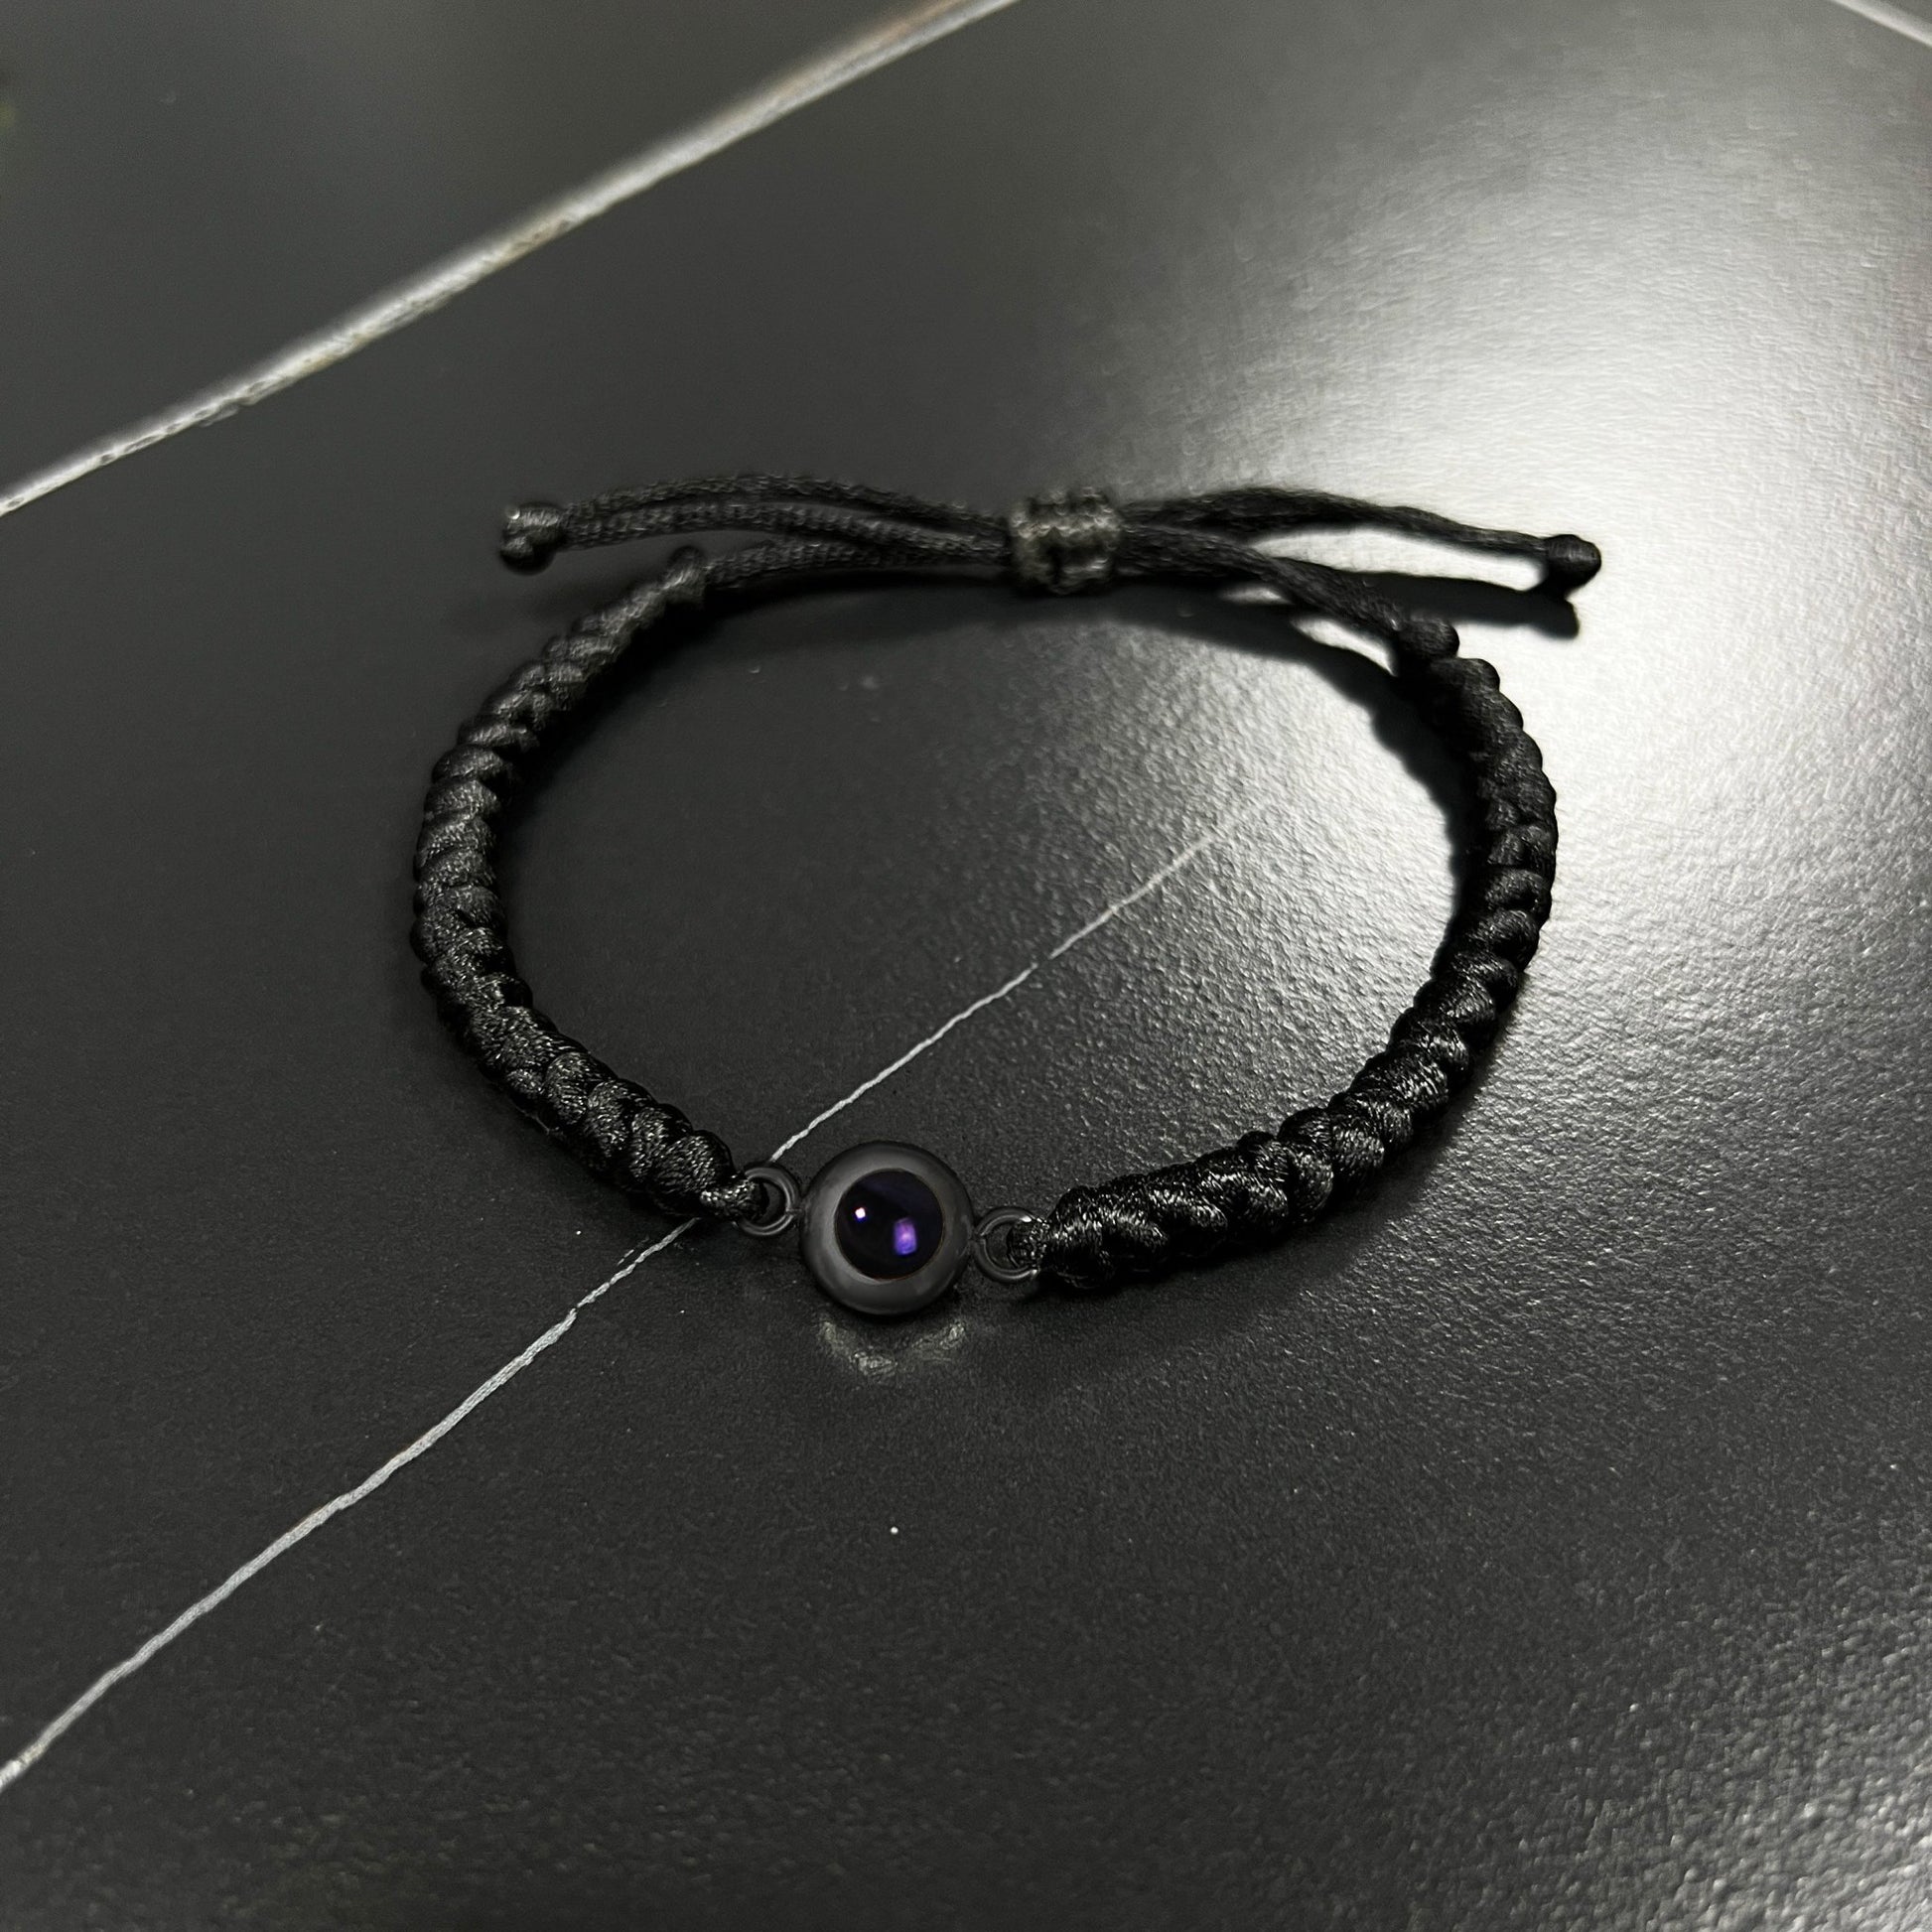 Customised Snake Knot Braided Projection Bracelet - Hidden Forever